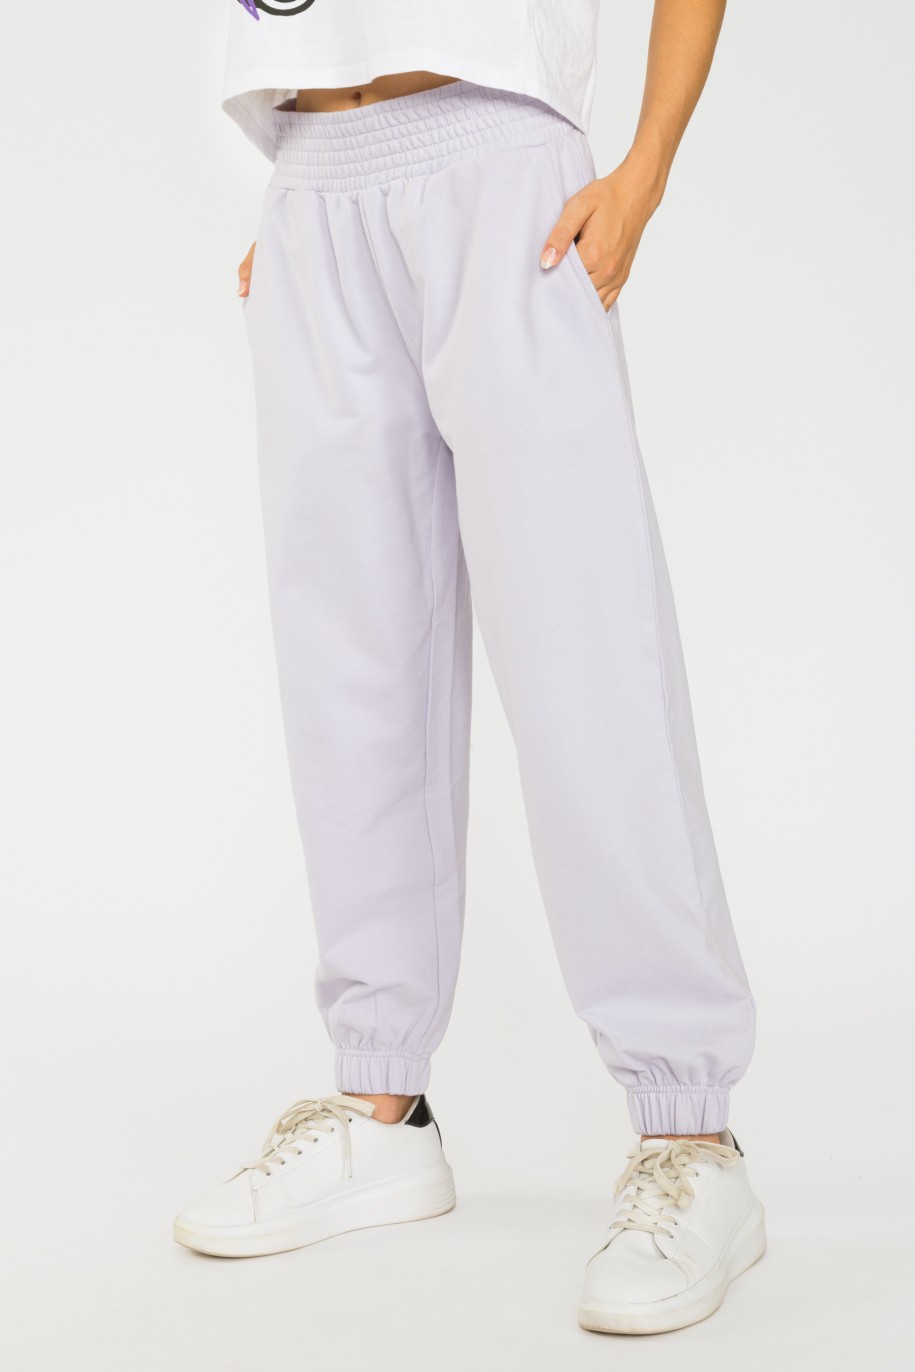 Liliowe pastelowe spodnie dresowe ze ściągaczem - 36408